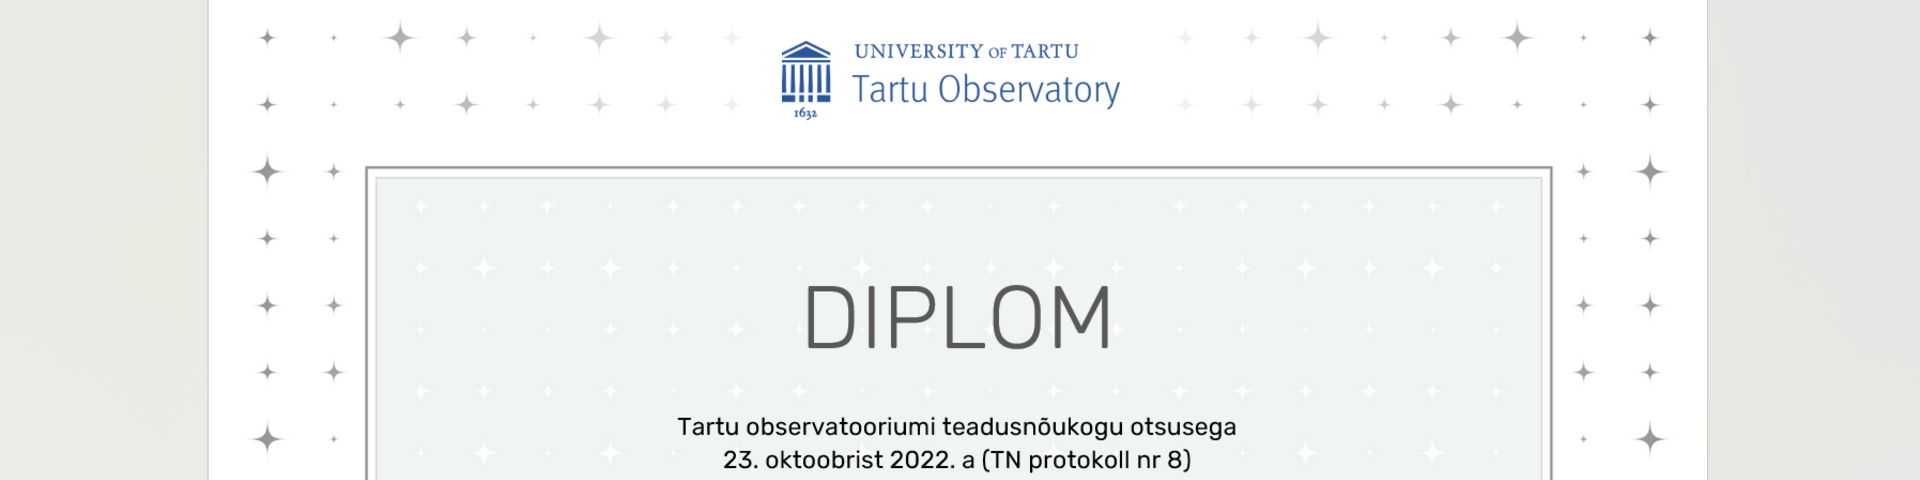 Tartu observatooriumi stipendium - Tartu Ulikool